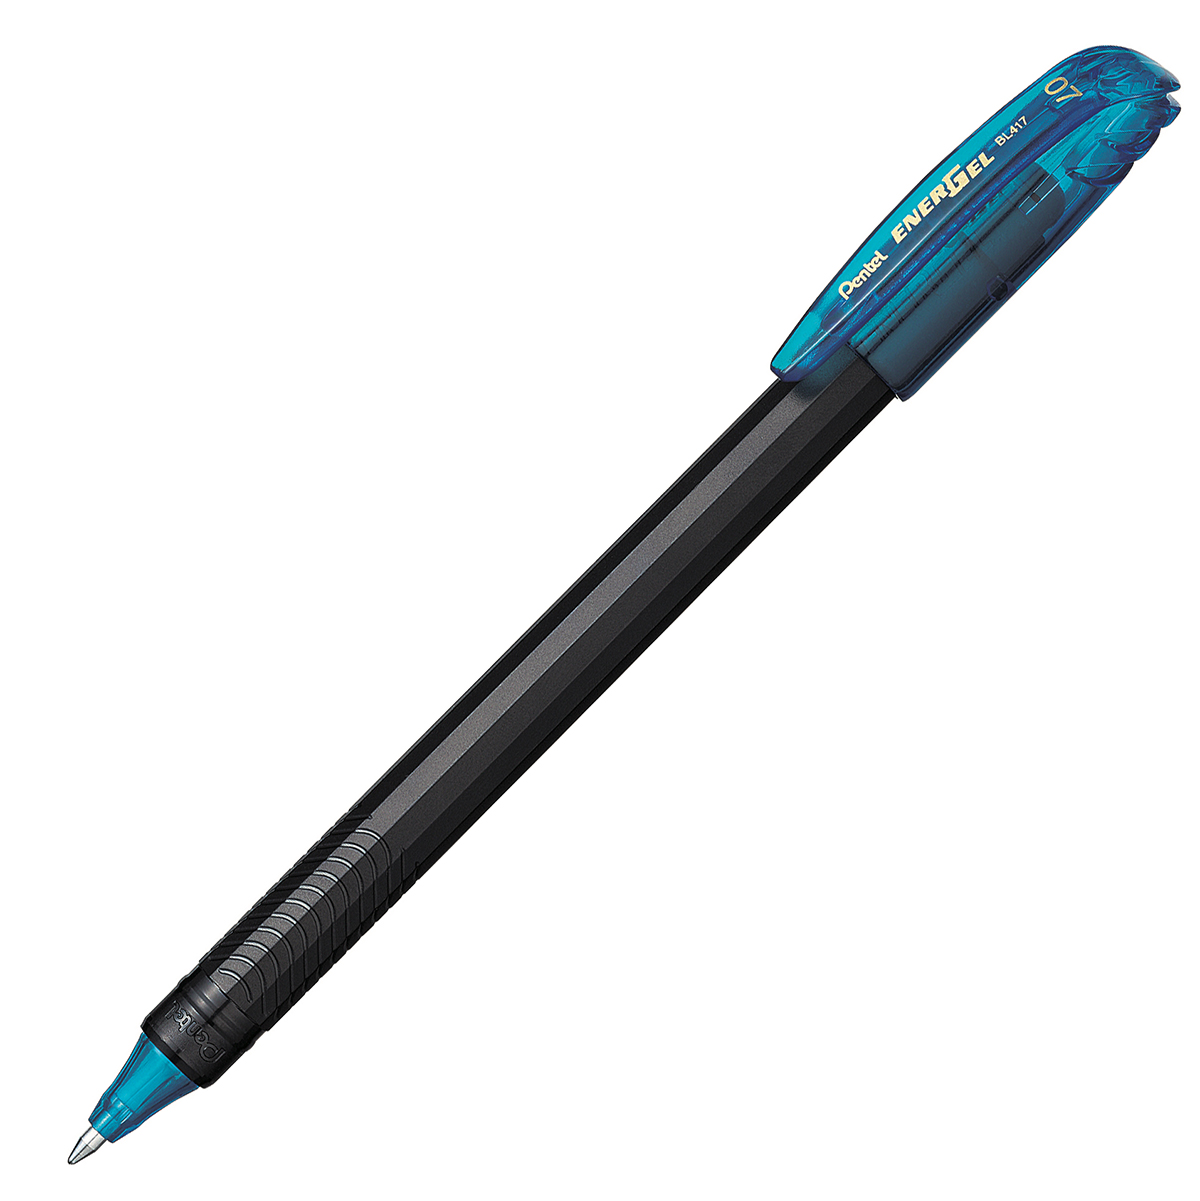 Bolígrafo Pentel energel stick, punto 0. Bolígrafo Pentel energel tinta gel color azul claro, 0.7 mm secado rápido, peso ligero con 12 lados, hecho de 62% material reciclado. la tapa indica el color de la tinta                                                                                       7mm (mediano), tinta azul claro, 1 pieza - BL417-S